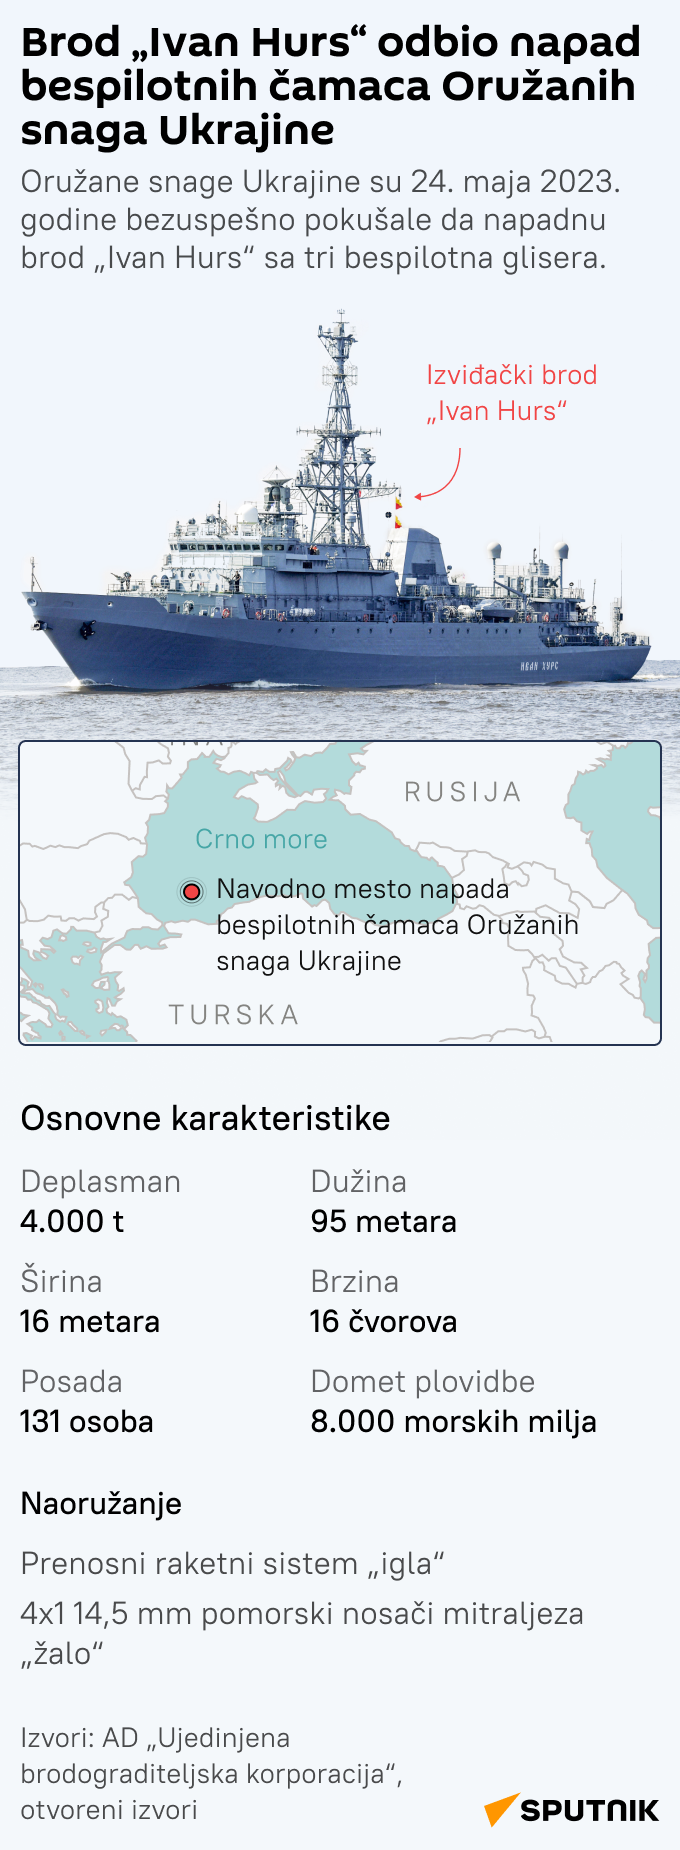 Brod „Ivan Hurs“ odbio napad bespilotnih čamaca Oružanih snaga Ukrajine LATINICA mob - Sputnik Srbija